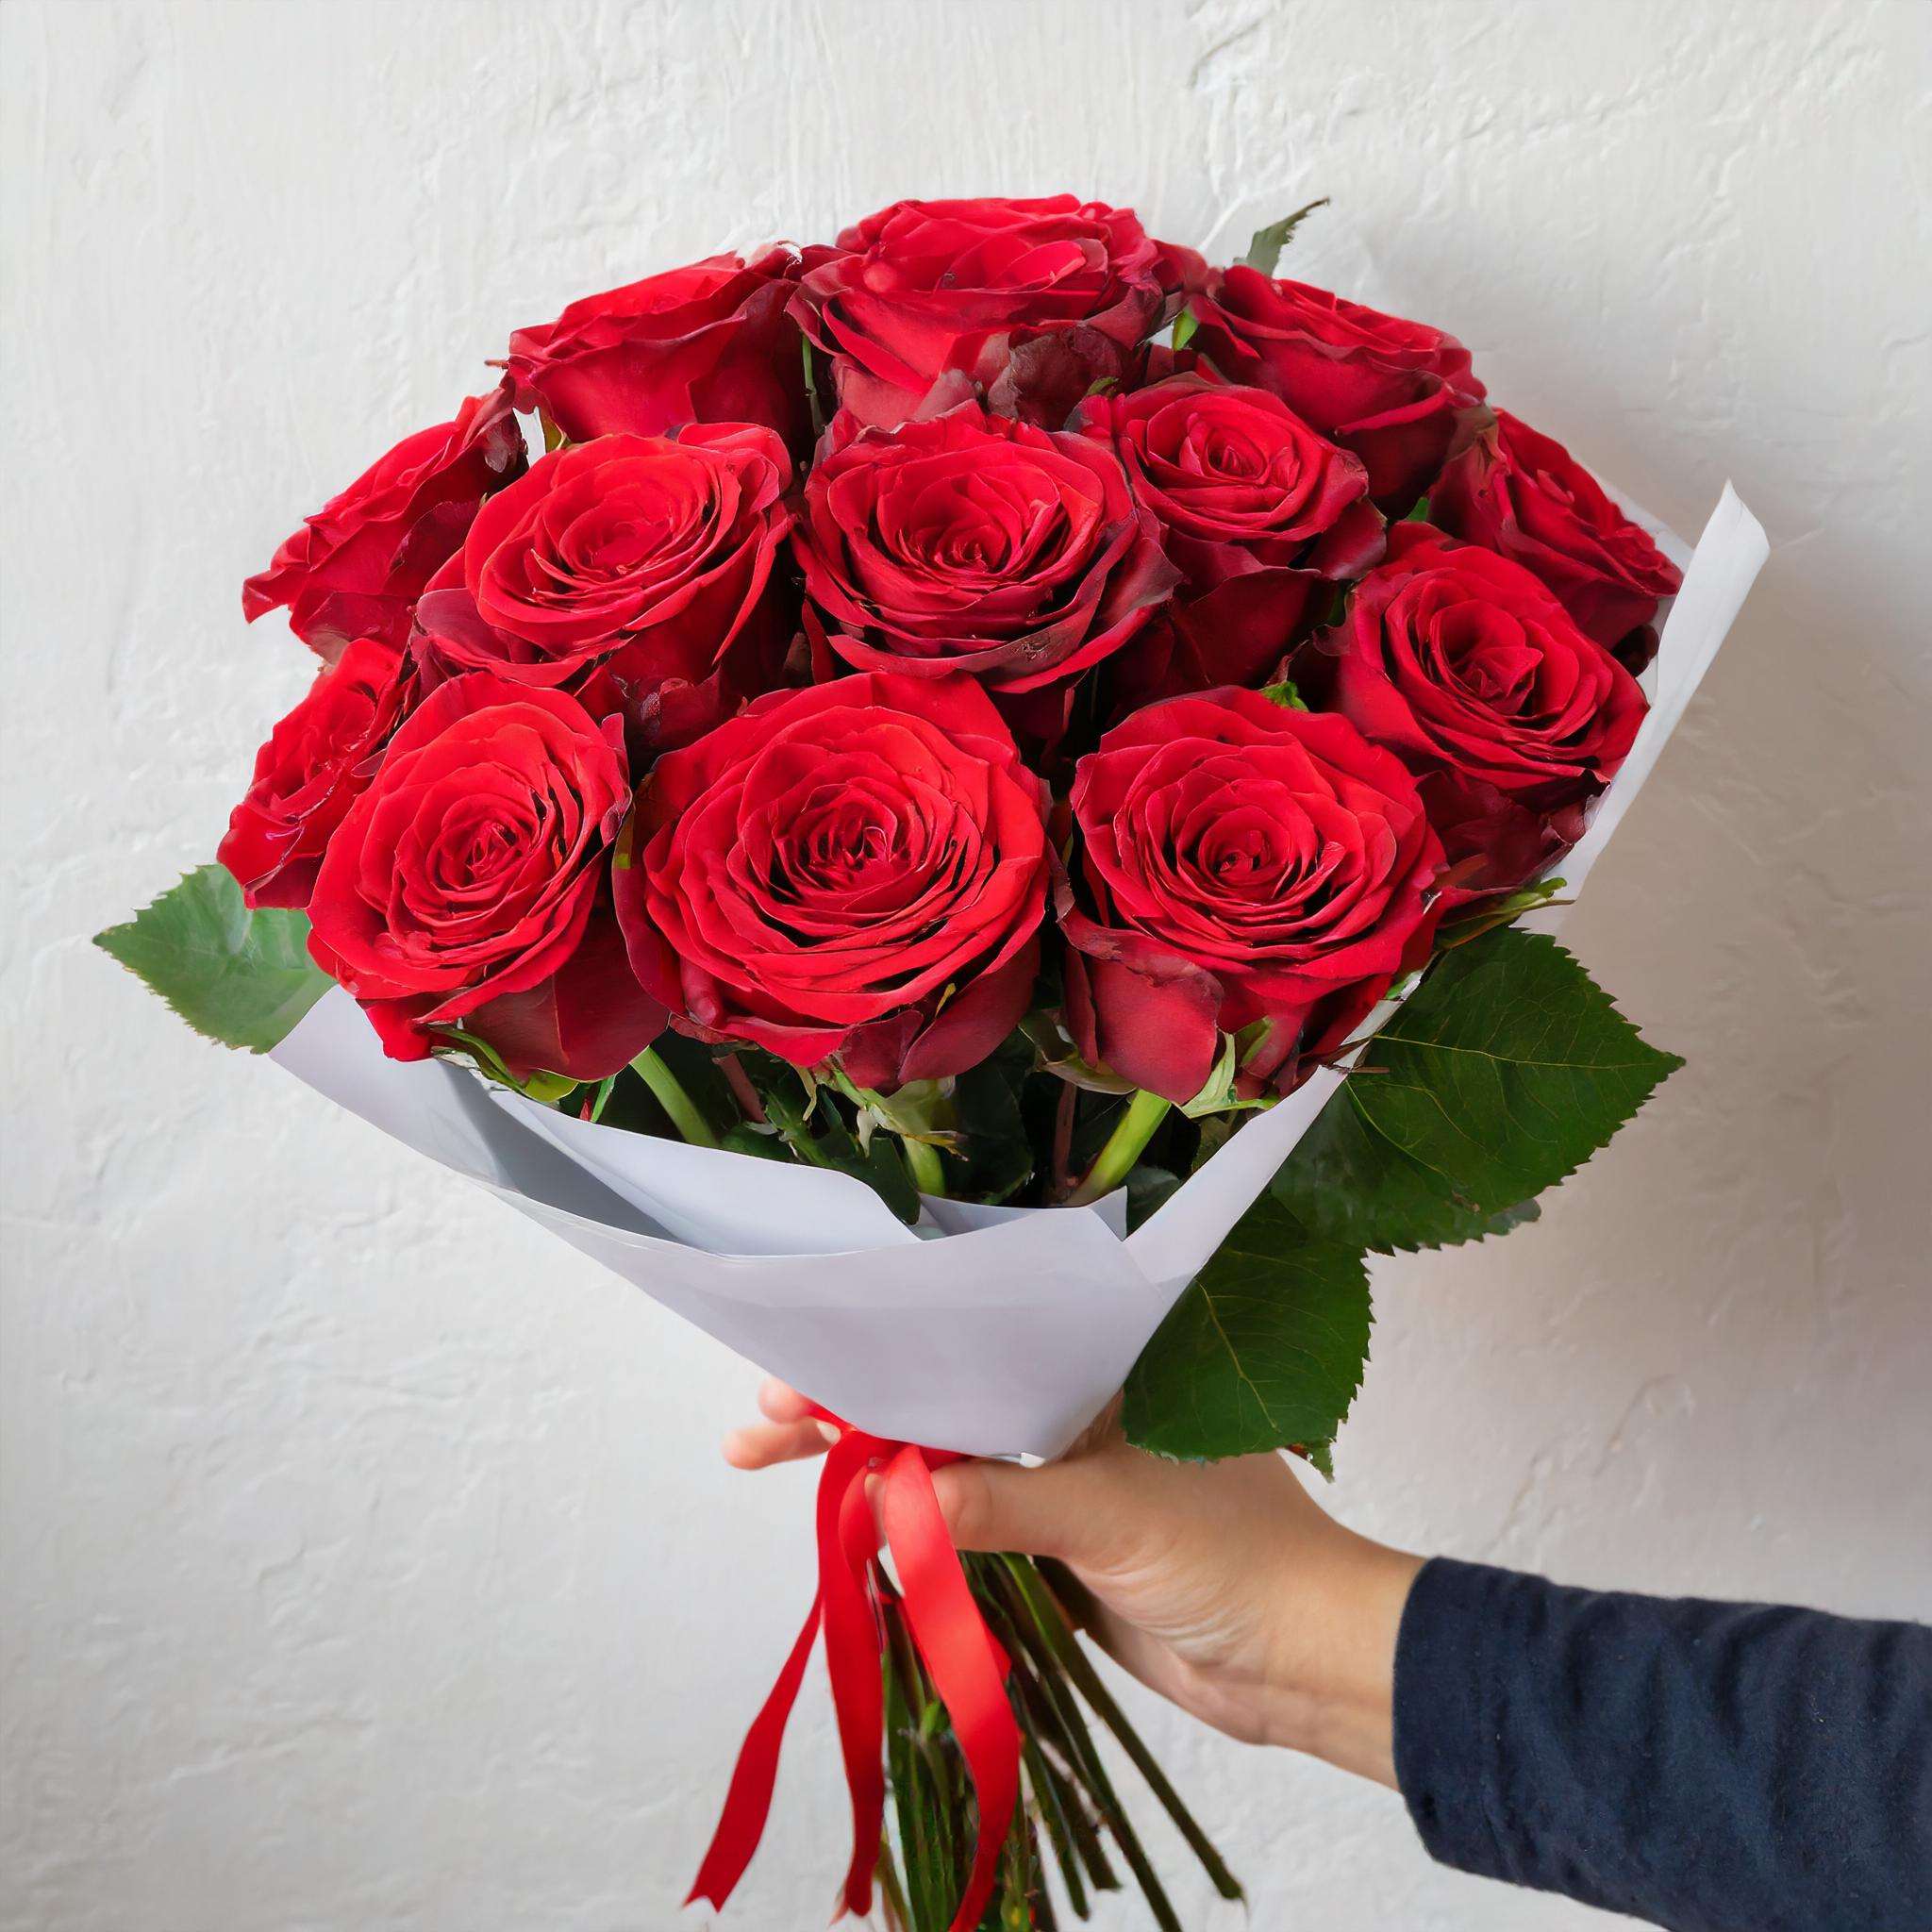 Bouquet con rosas rojas